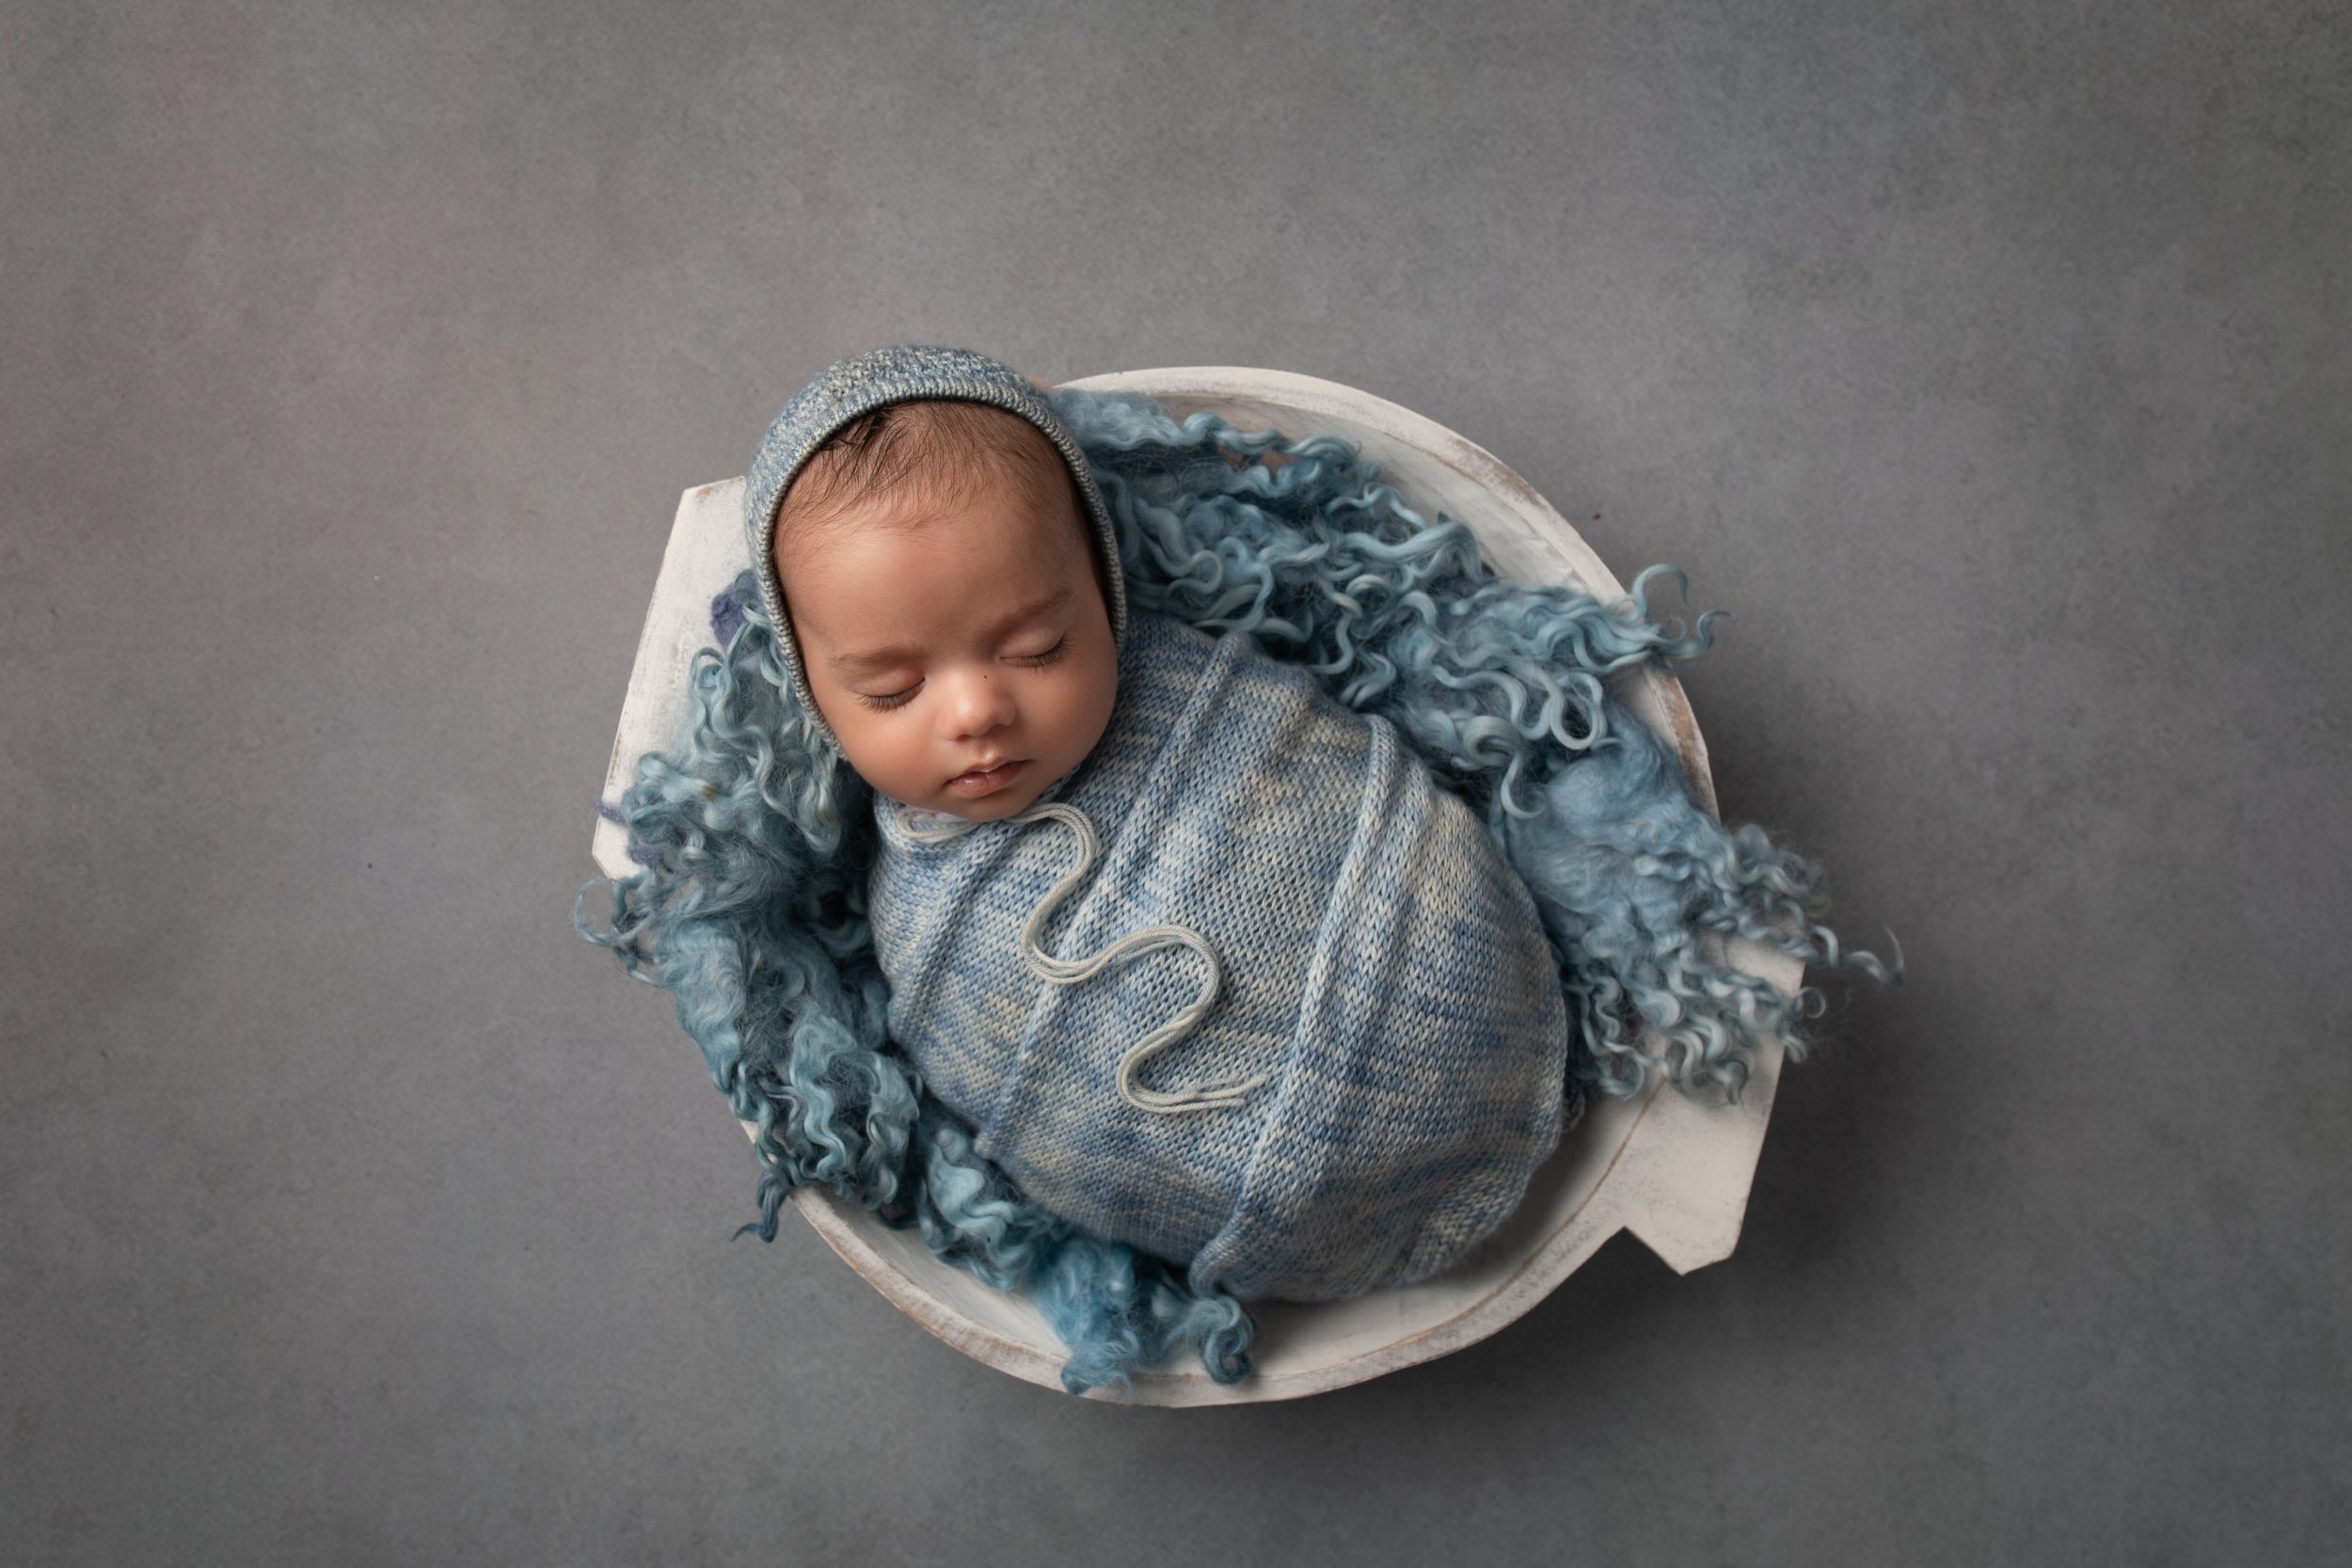  Newborn boy in a bowl with blue fluffy blanket in MK 